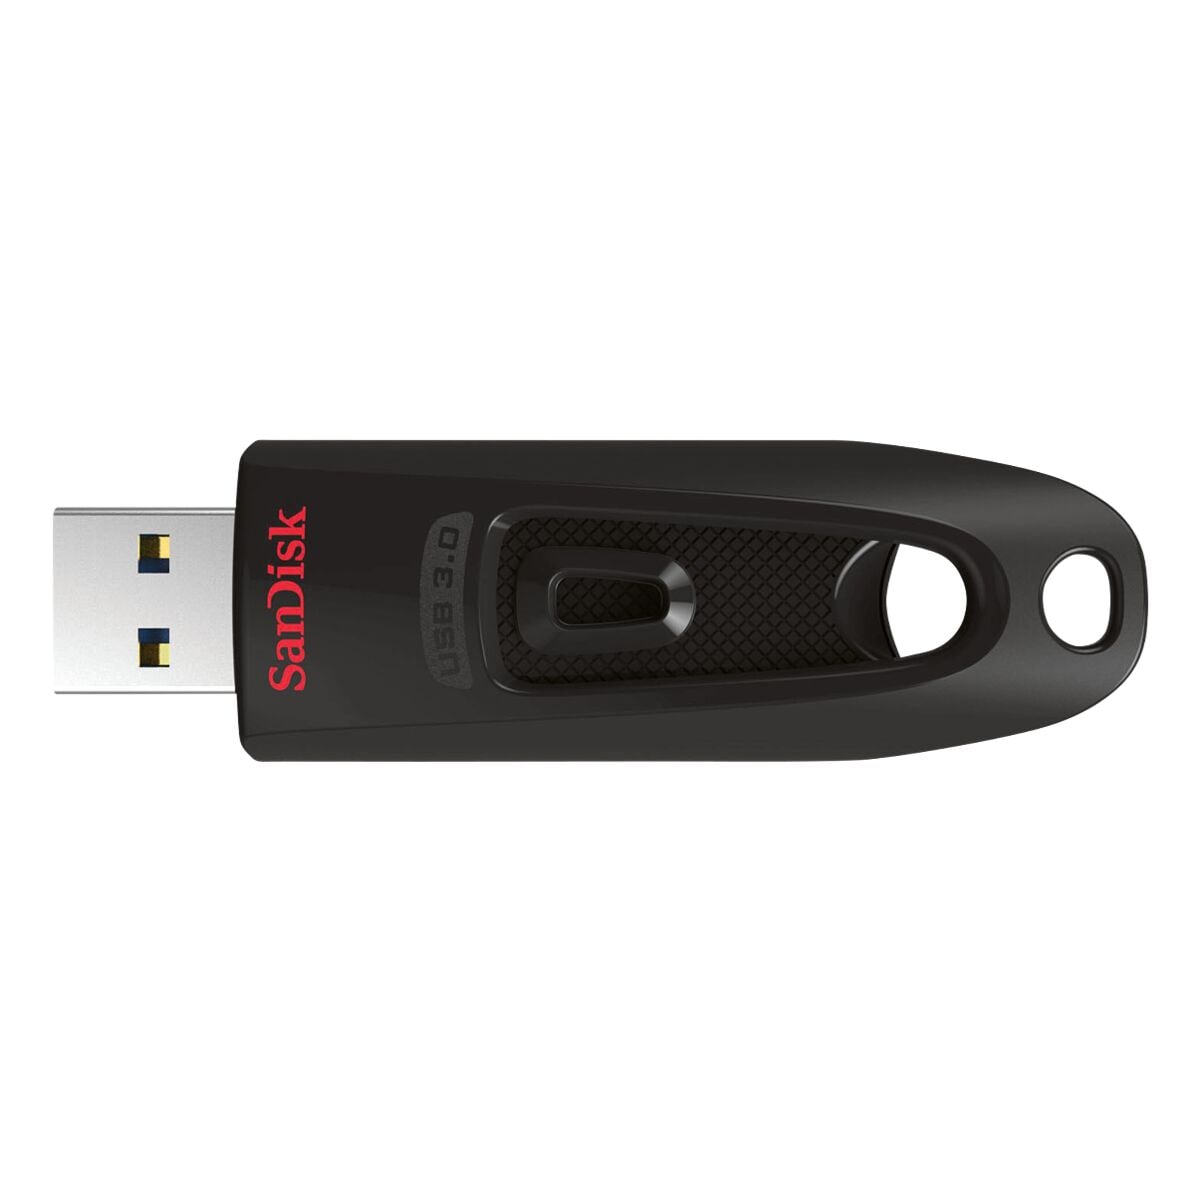 USB-Stick 32 GB SanDisk Ultra USB 3.0